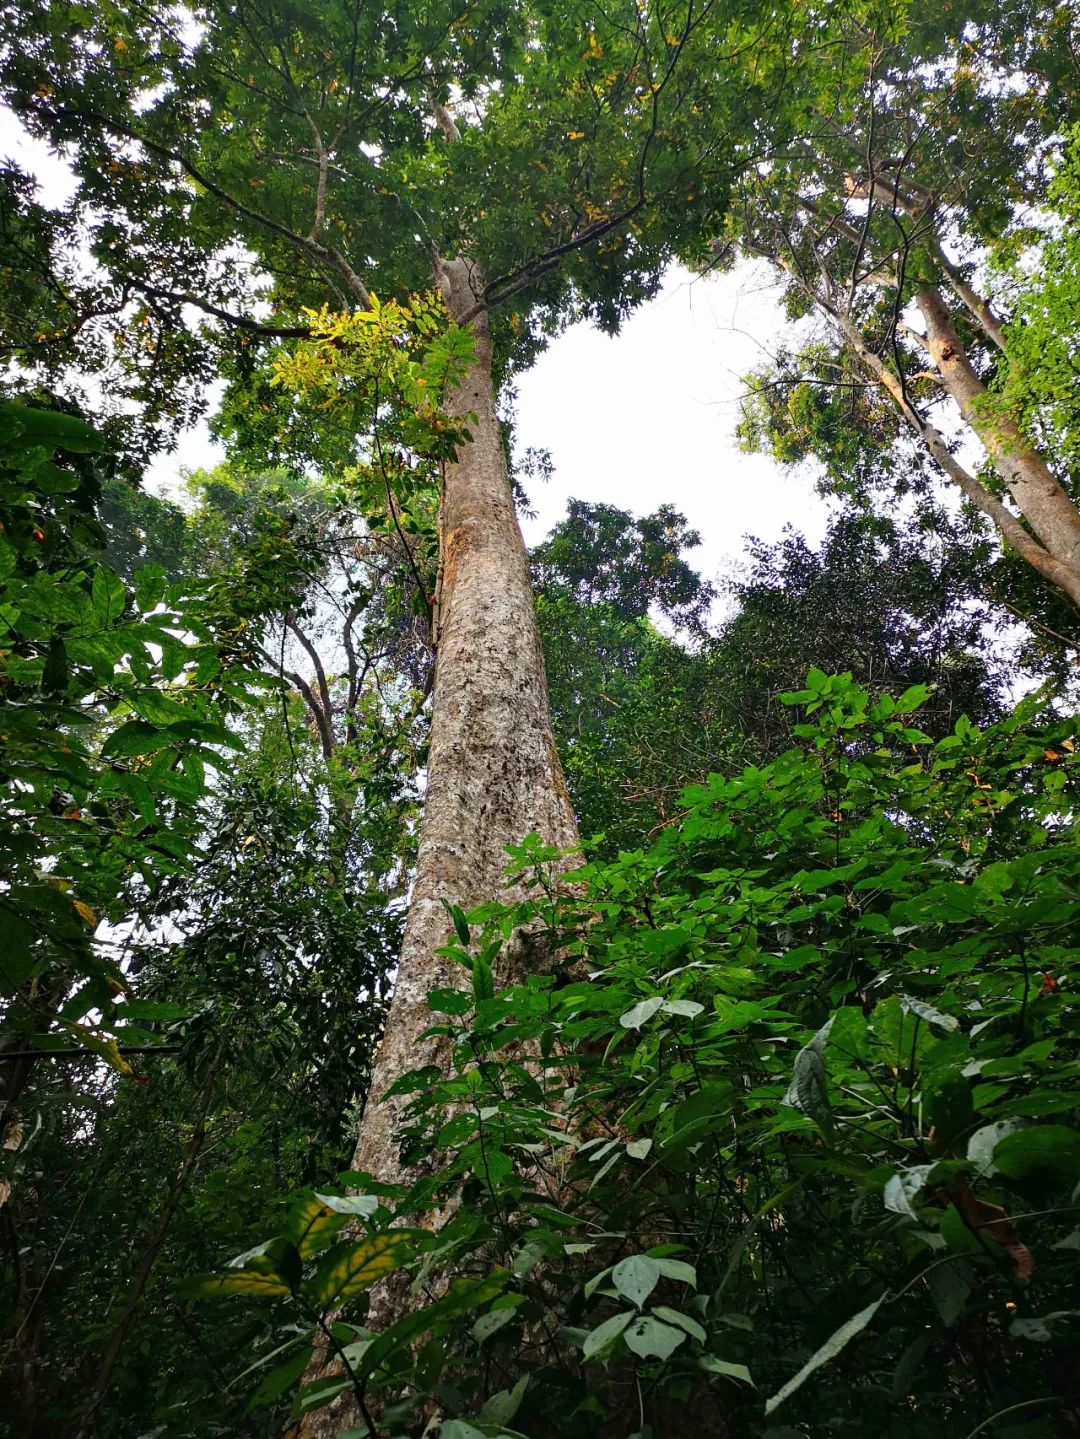 云南与老挝,缅甸,有个罕见绿州,森林覆盖率达80%以上